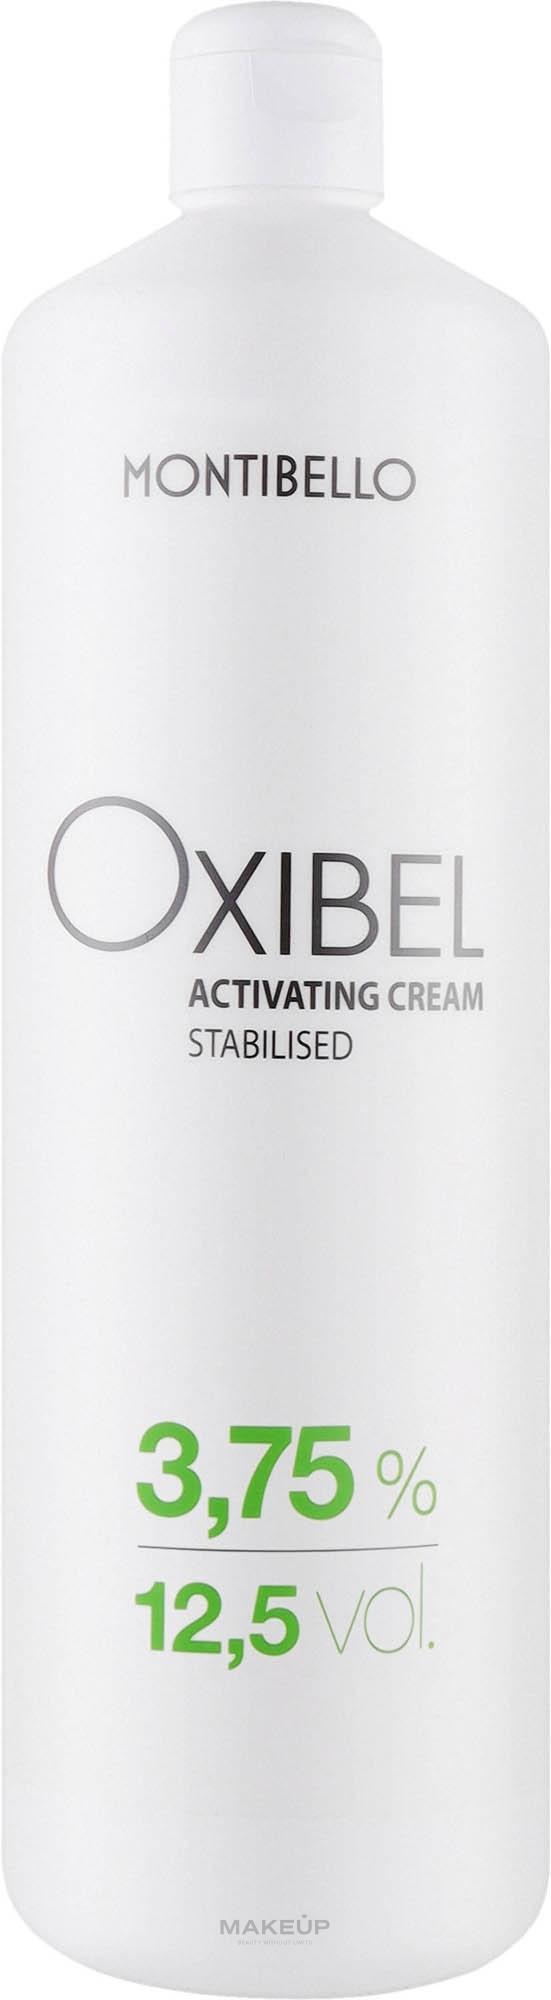 Окислювальний крем для волосся, 12,5 vol 3,75% - Montibello Oxibel Activating Cream — фото 1000ml